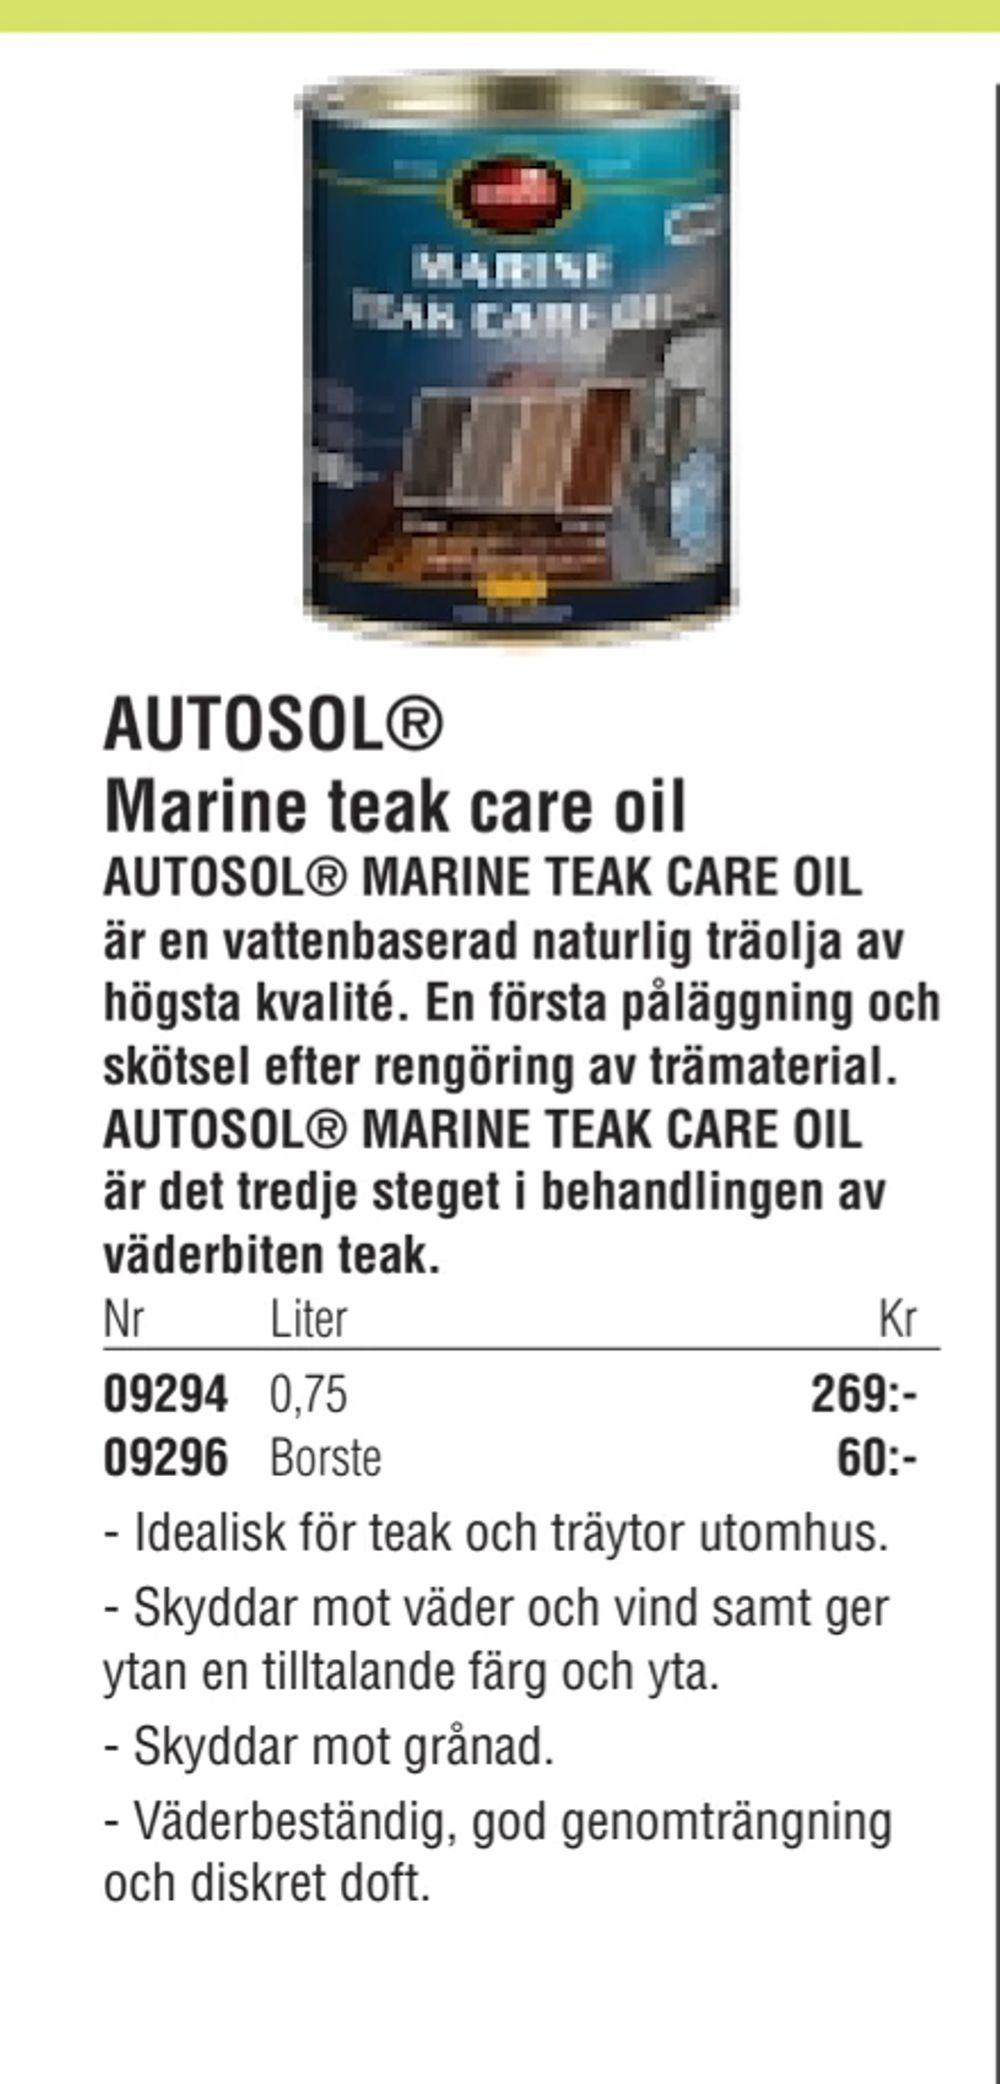 Erbjudanden på AUTOSOL® Marine teak care oil från Erlandsons Brygga för 269 kr